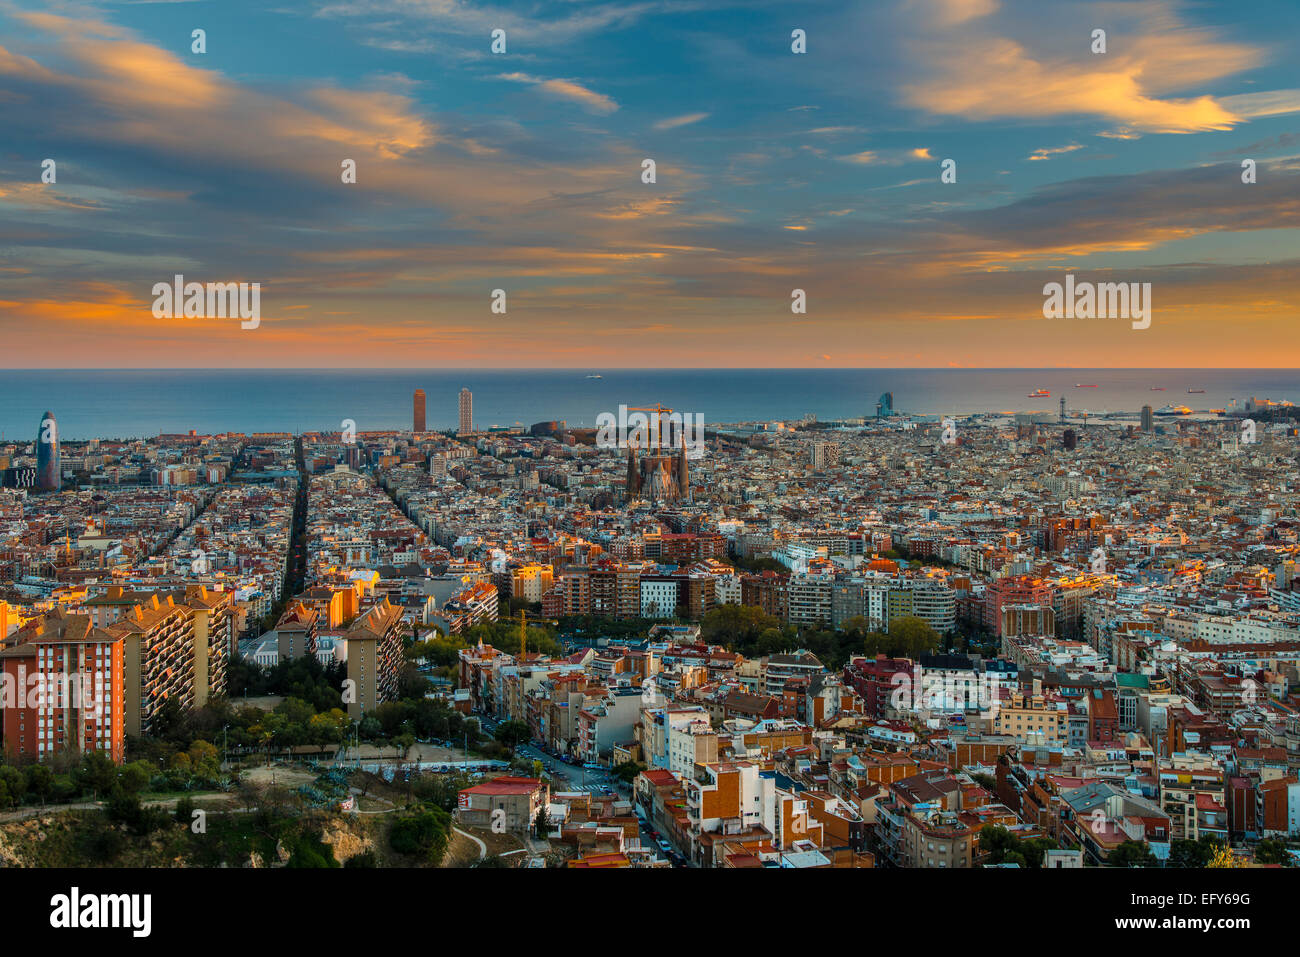 El horizonte de la ciudad al atardecer, Barcelona, Cataluña, España Foto de stock